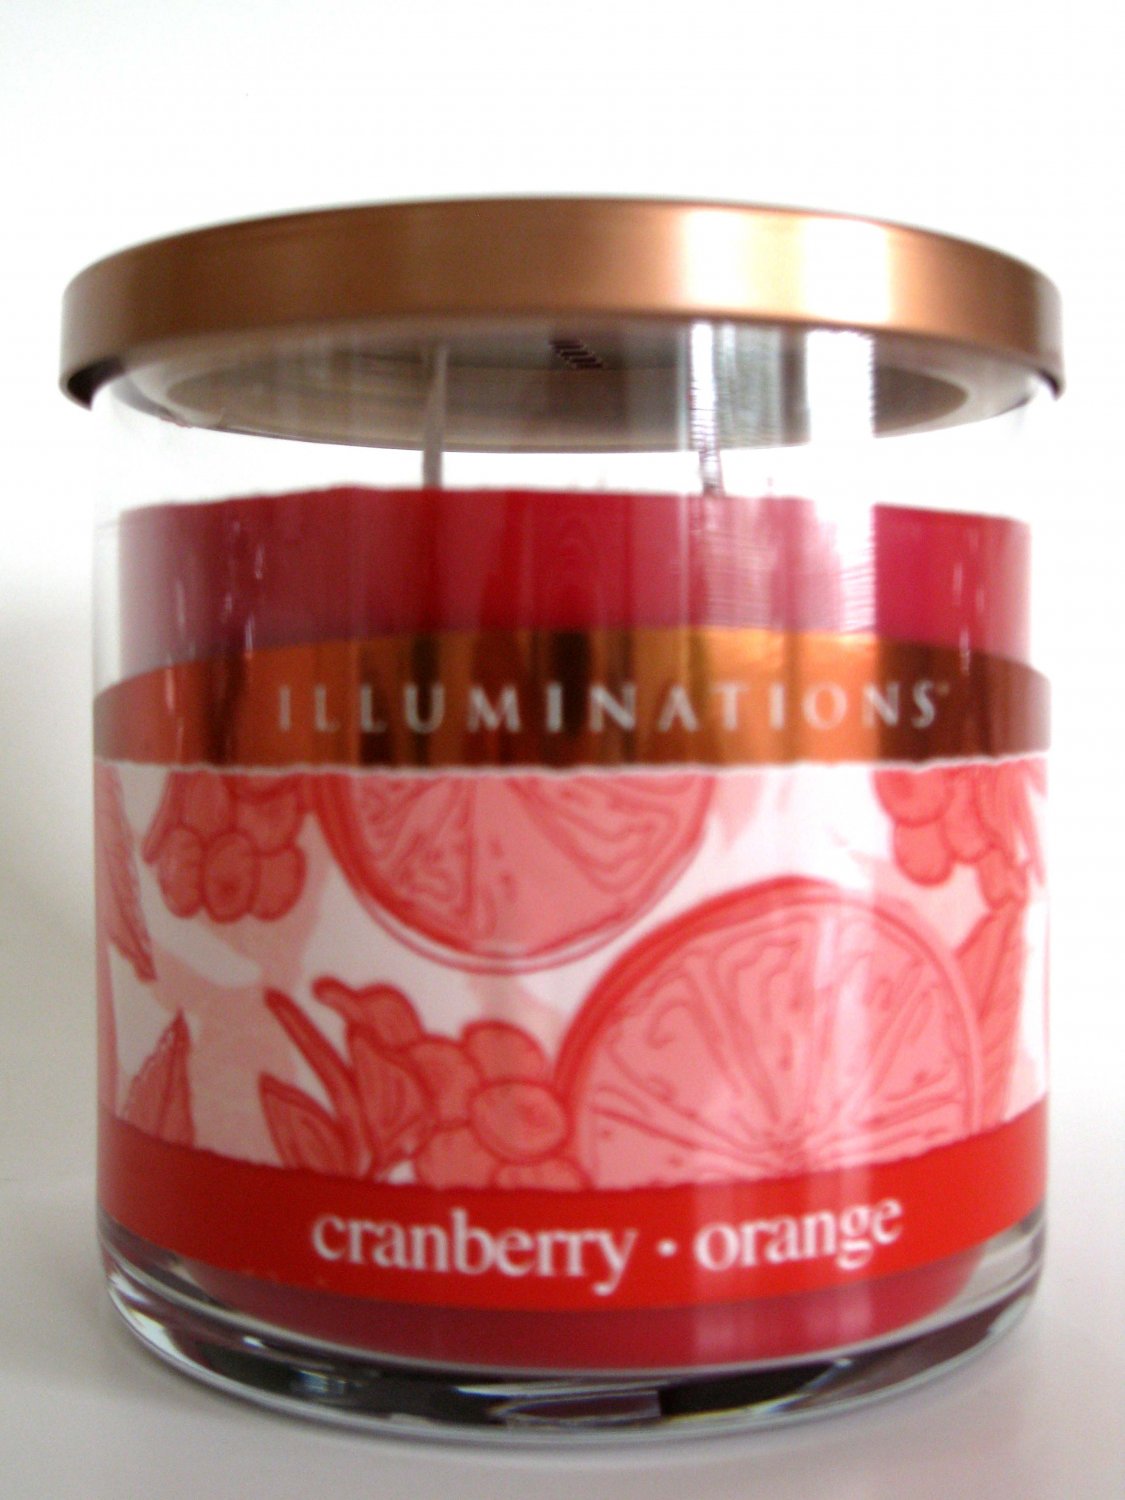 Illuminations Yankee Candle Cranberry Orange Scented ...
